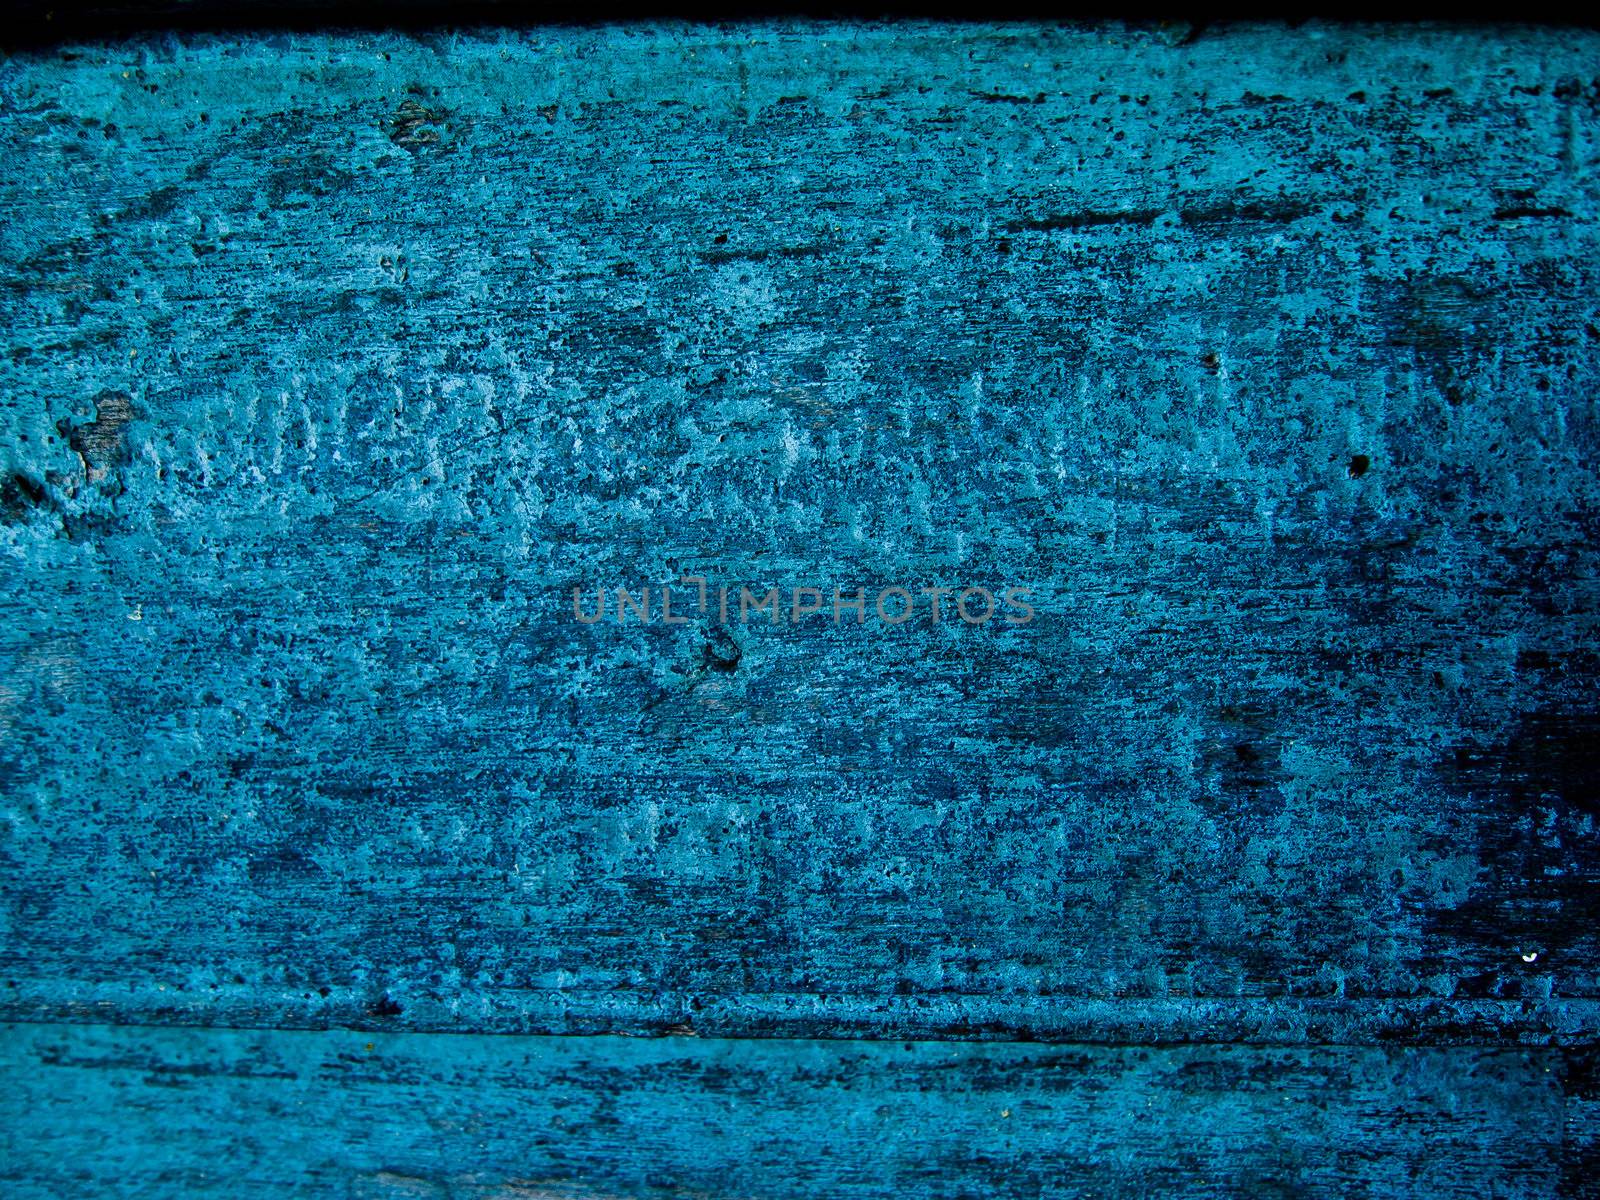 Blue wood pattern by gjeerawut